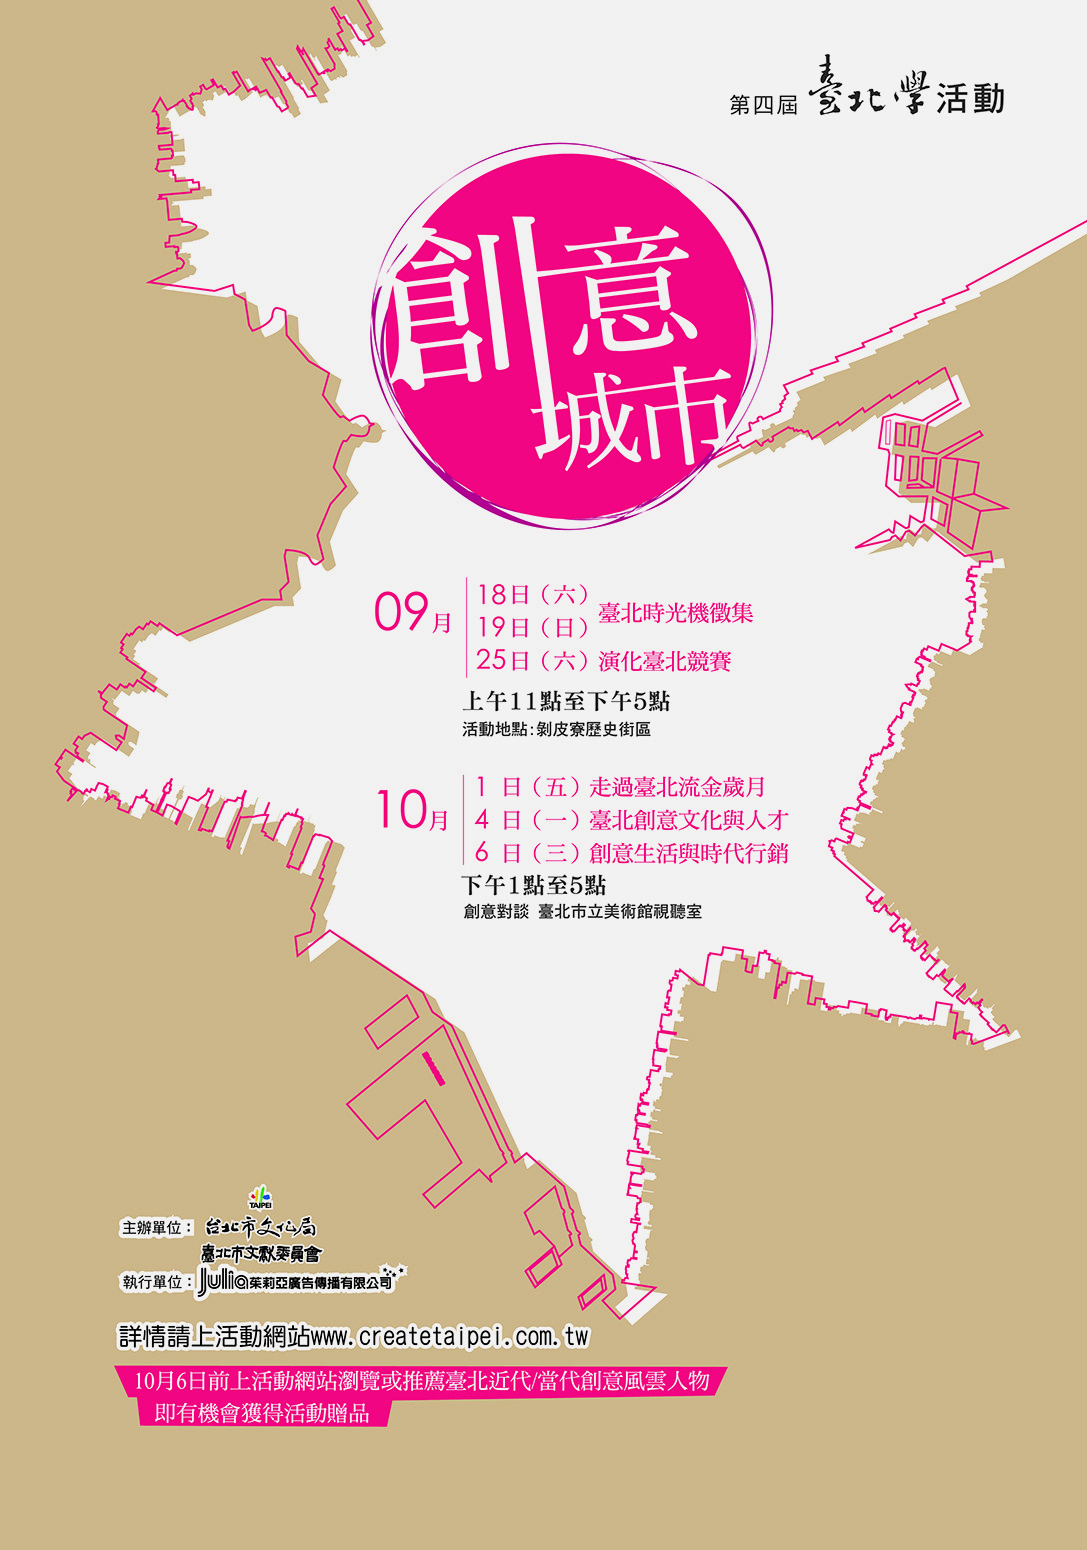 イベントポスター :クリエイティブ台北